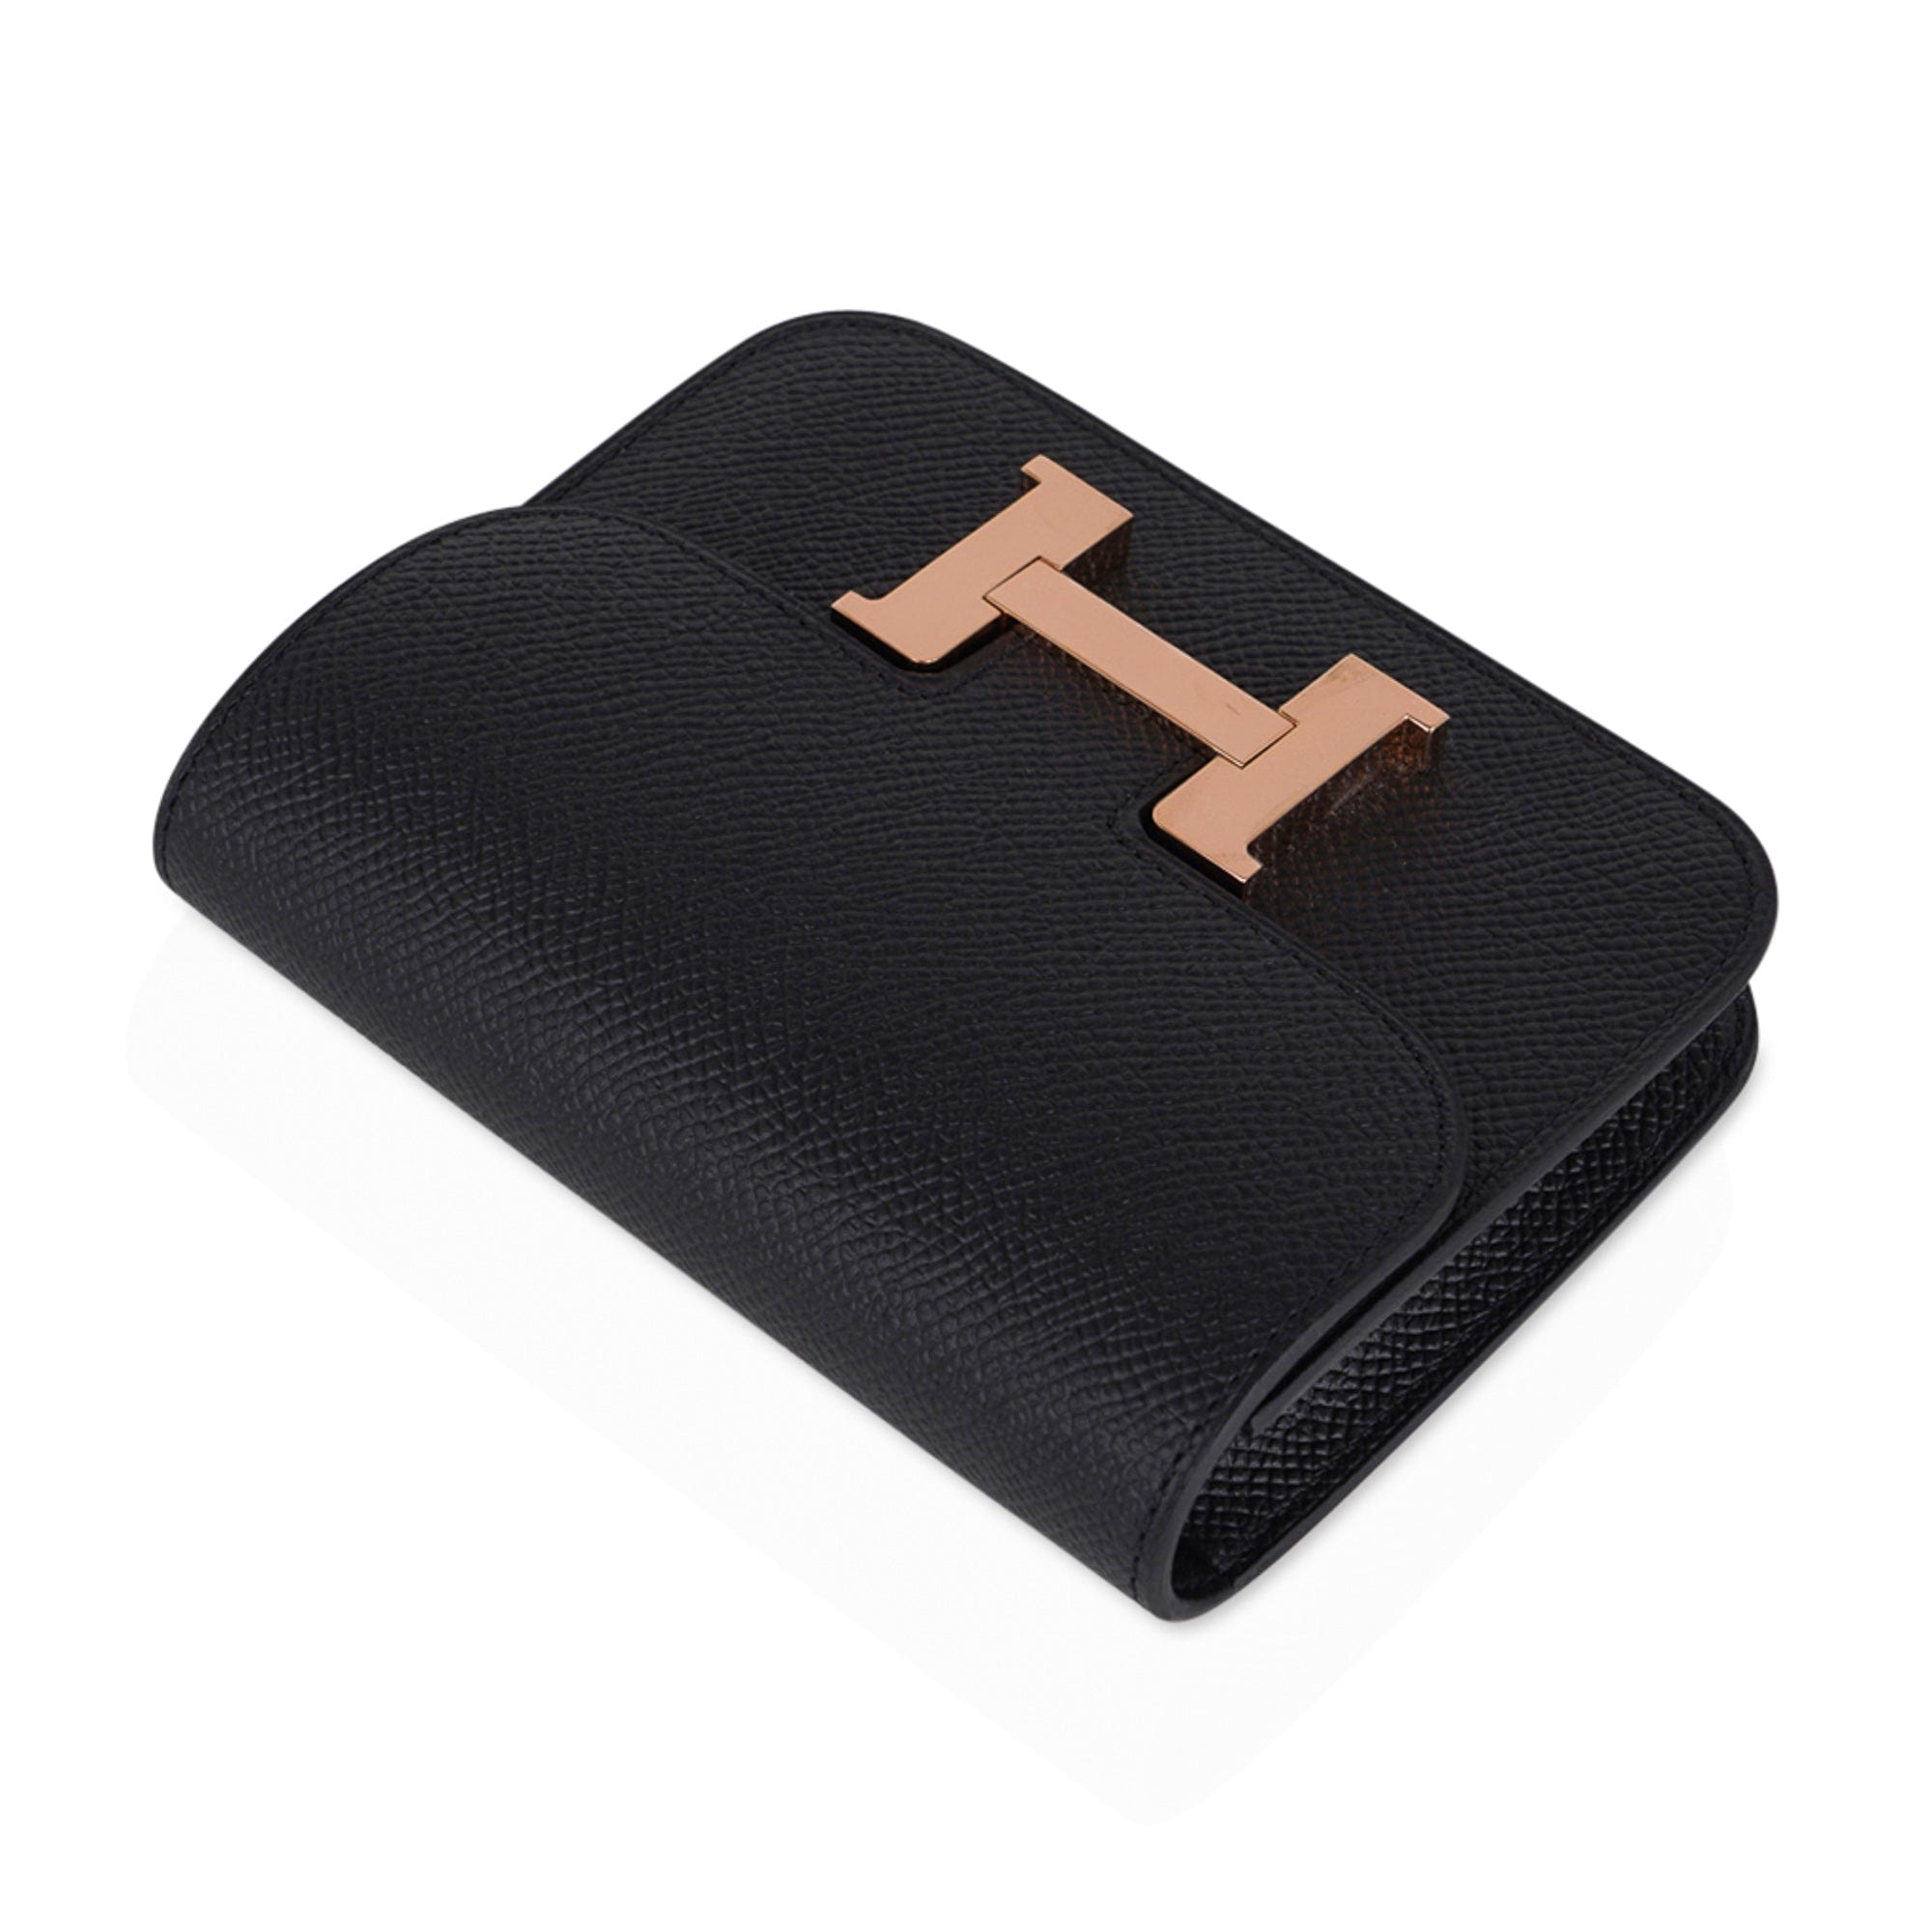 Hermes Constance Slim Wallet Waist Belt Bag Biscuit Gold Hardware